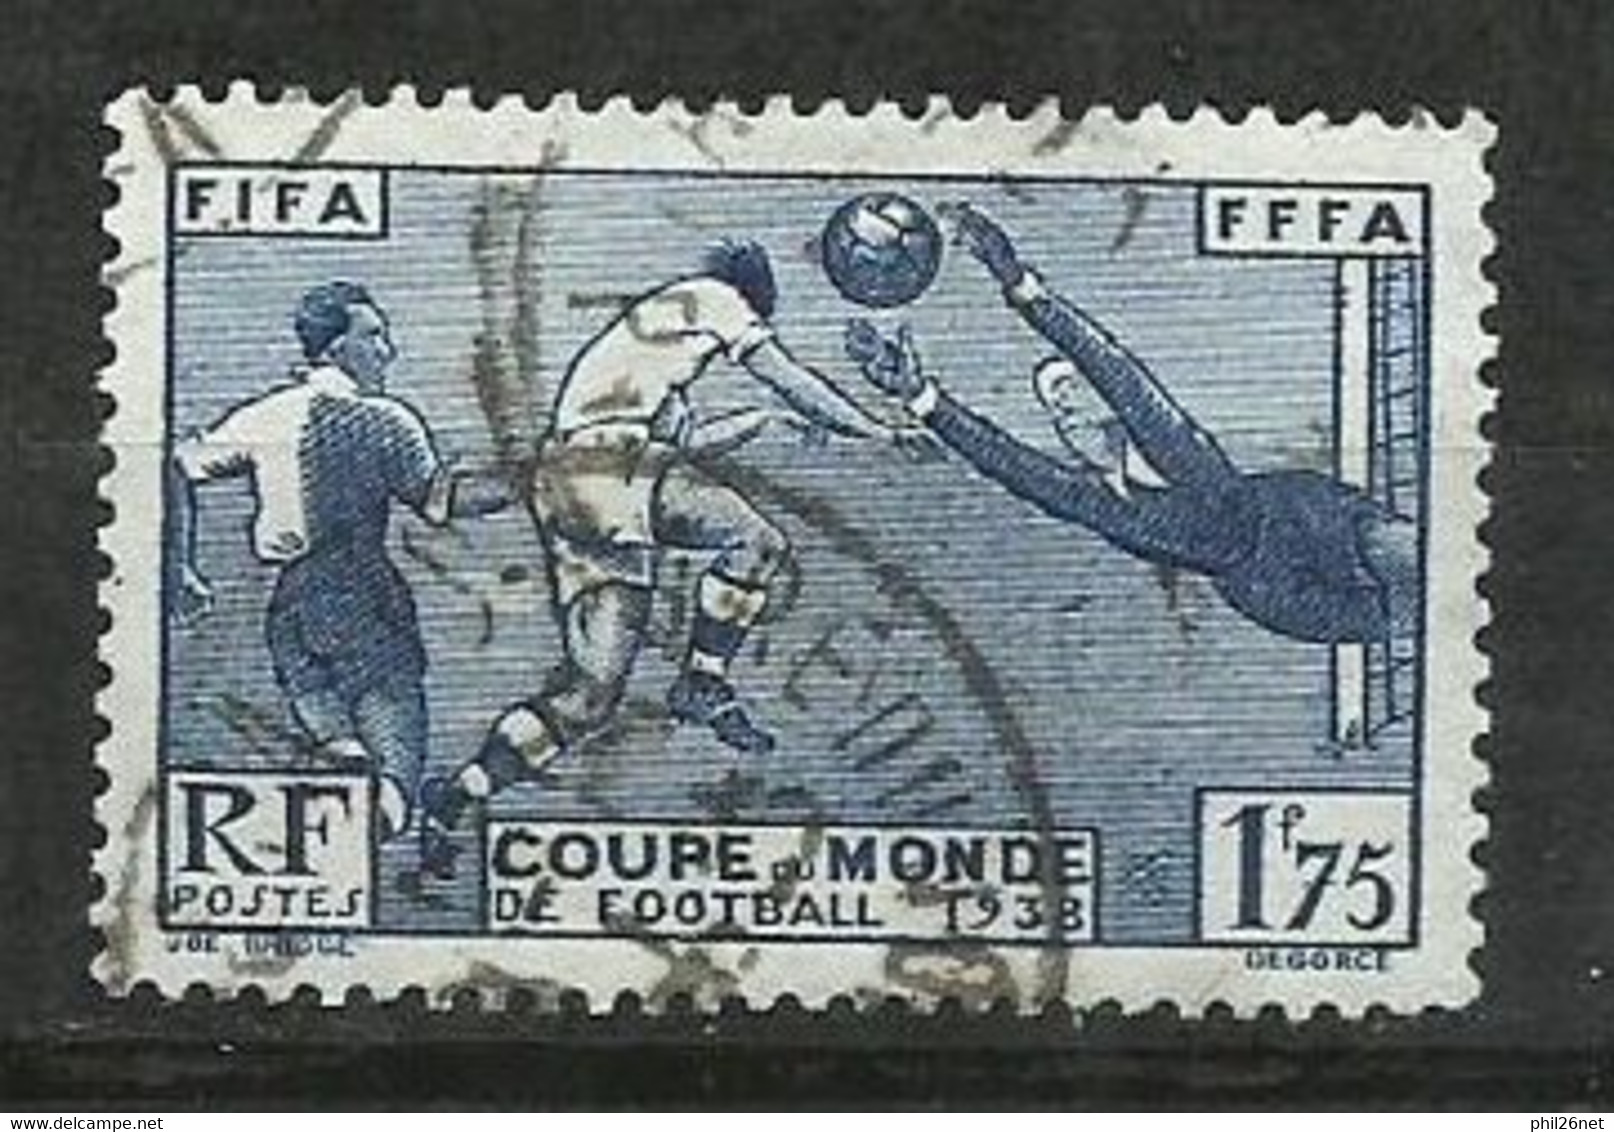 France N° 396  Football Coupe Du Monde Paris  1938    Oblitéré B/T B      Voir Scans      Soldé ! ! ! - 1938 – Francia